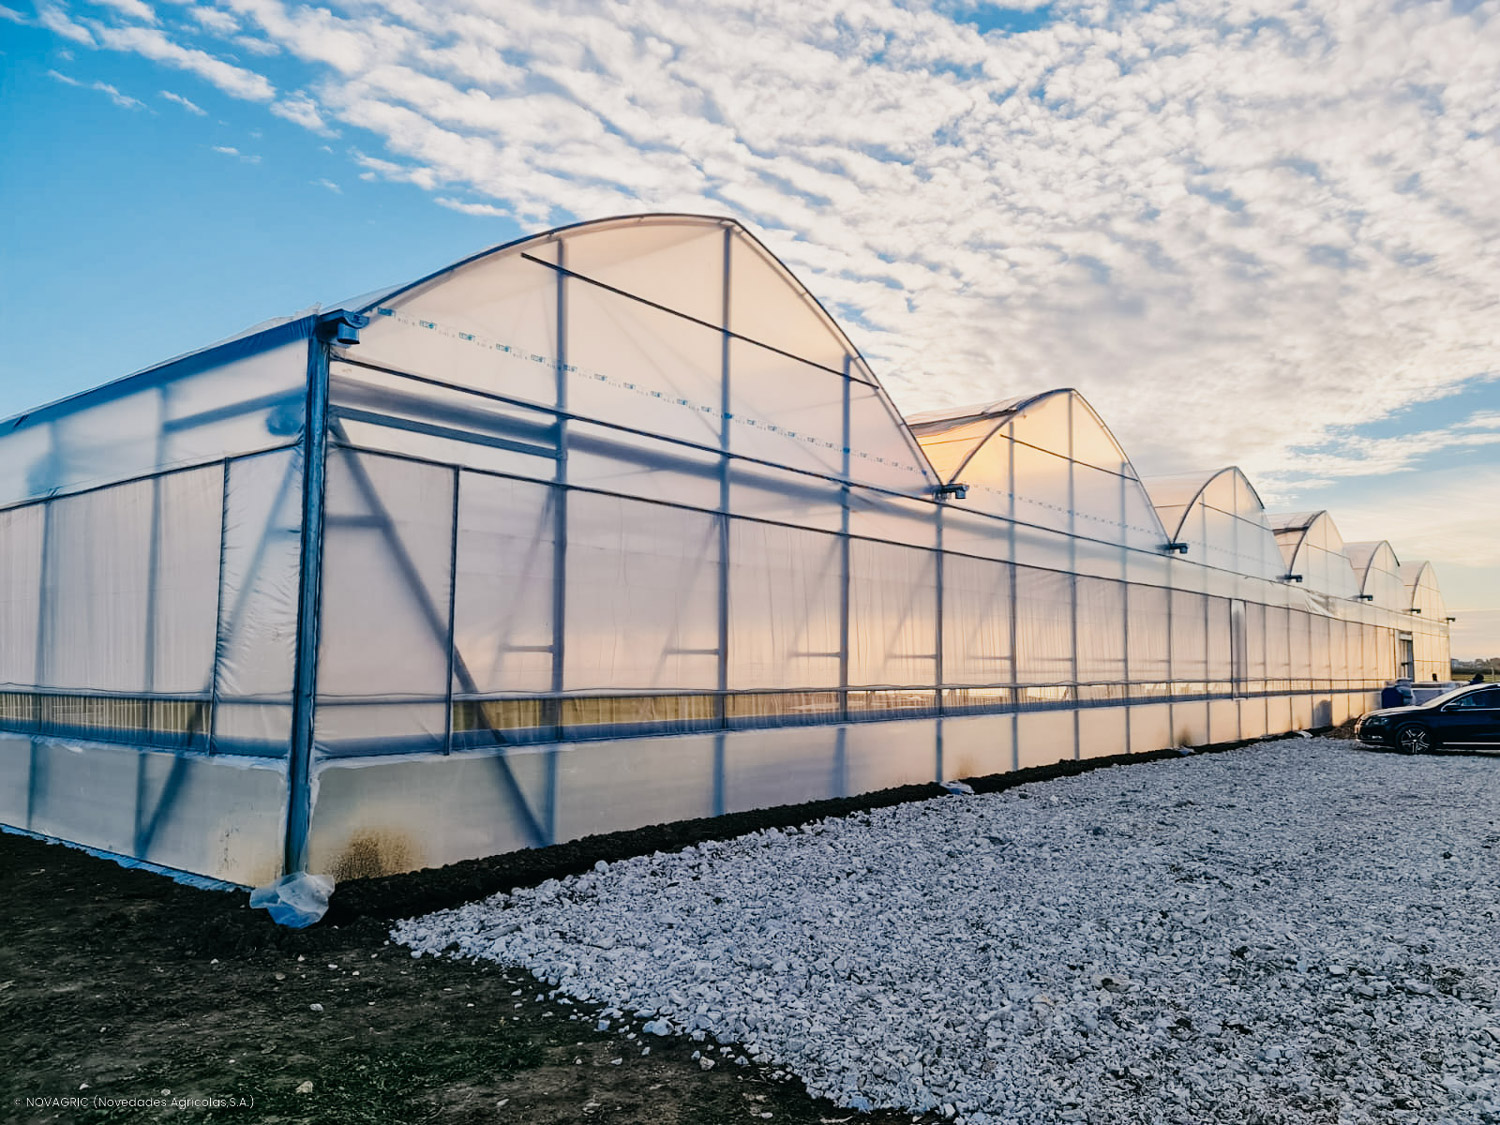 Novagric implementó un proyecto de invernadero para el cultivo de tomate en los Balcanes, enfocado en fomentar el emprendimiento agrícola, mejorar la gestión del agua, y aumentar la productividad y comercialización en zonas rurales.